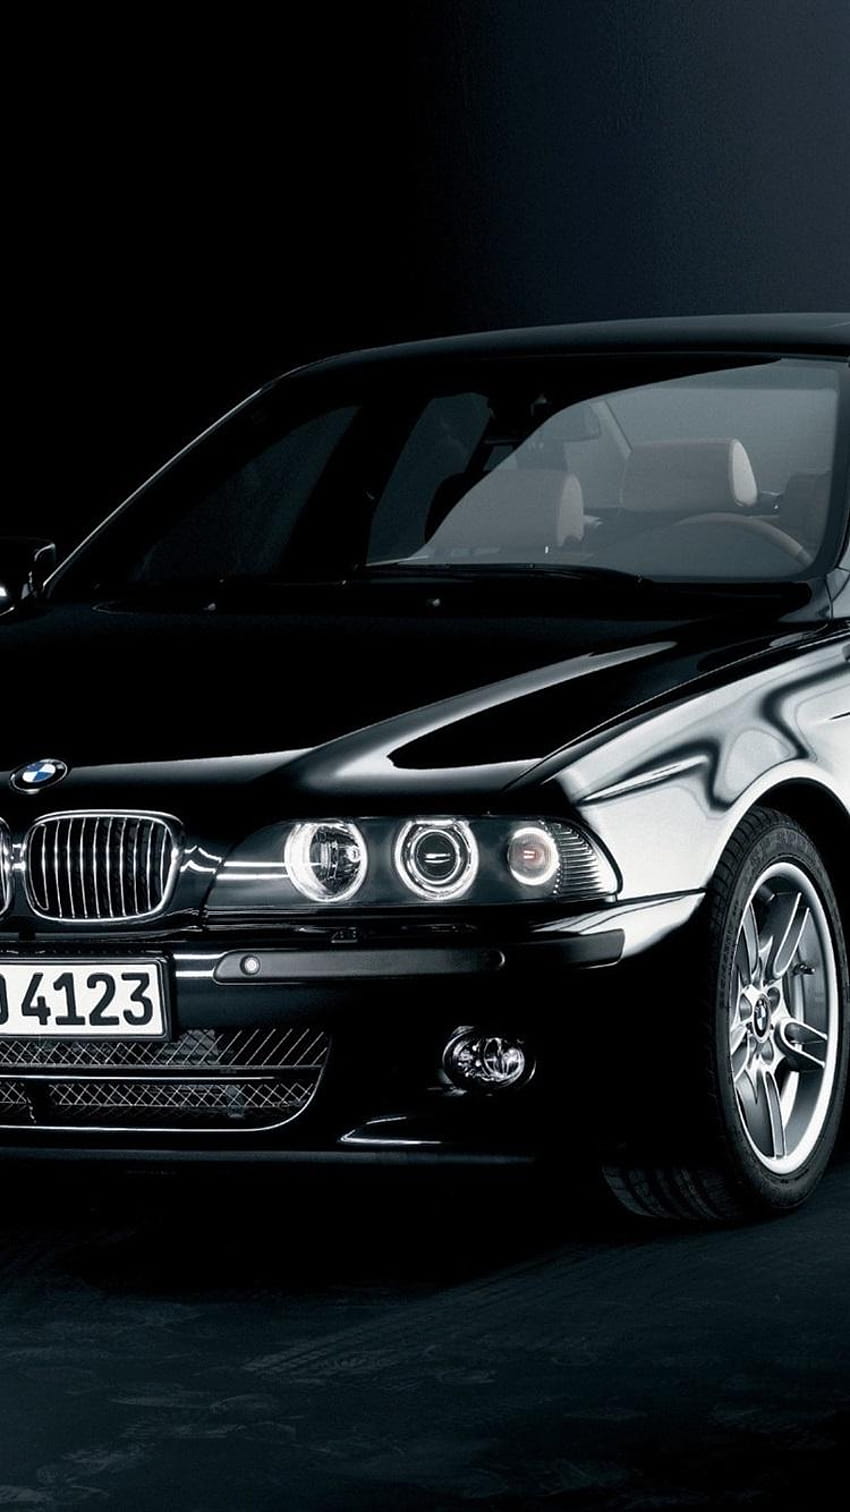 BMW E39 - chiếc xe hơi đầy phong cách với thiết kế đẹp mắt và hiệu suất tuyệt vời. Hãy xem hình ảnh về chiếc xe này để trải nghiệm cảm giác mạnh mẽ khi điều khiển.